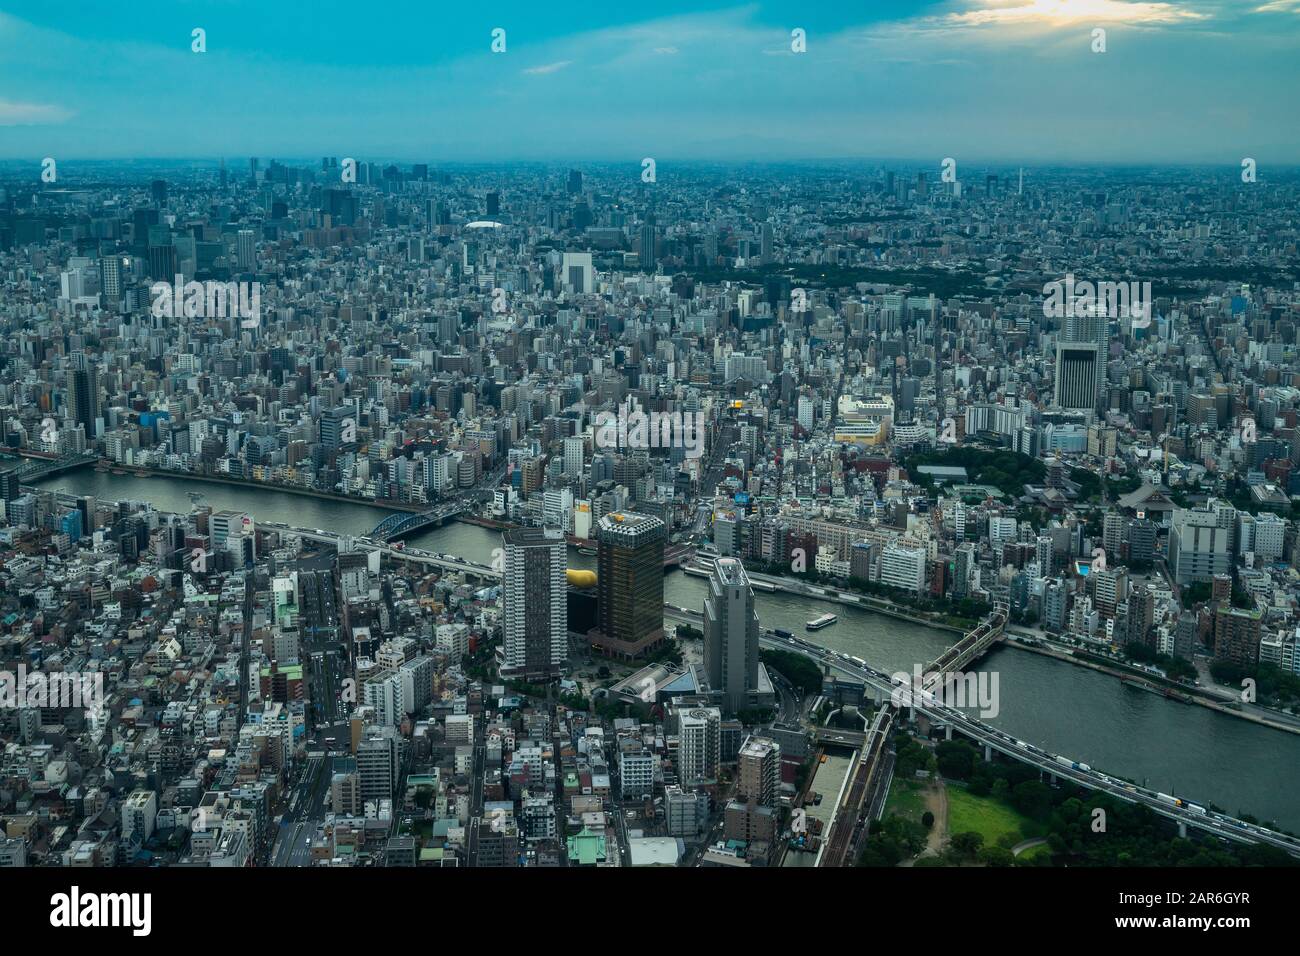 Veduta aerea di Tokyo dalla piattaforma di osservazione Skytree, la torre più alta del mondo (634,0 m - 2.080 piedi), Giappone Foto Stock